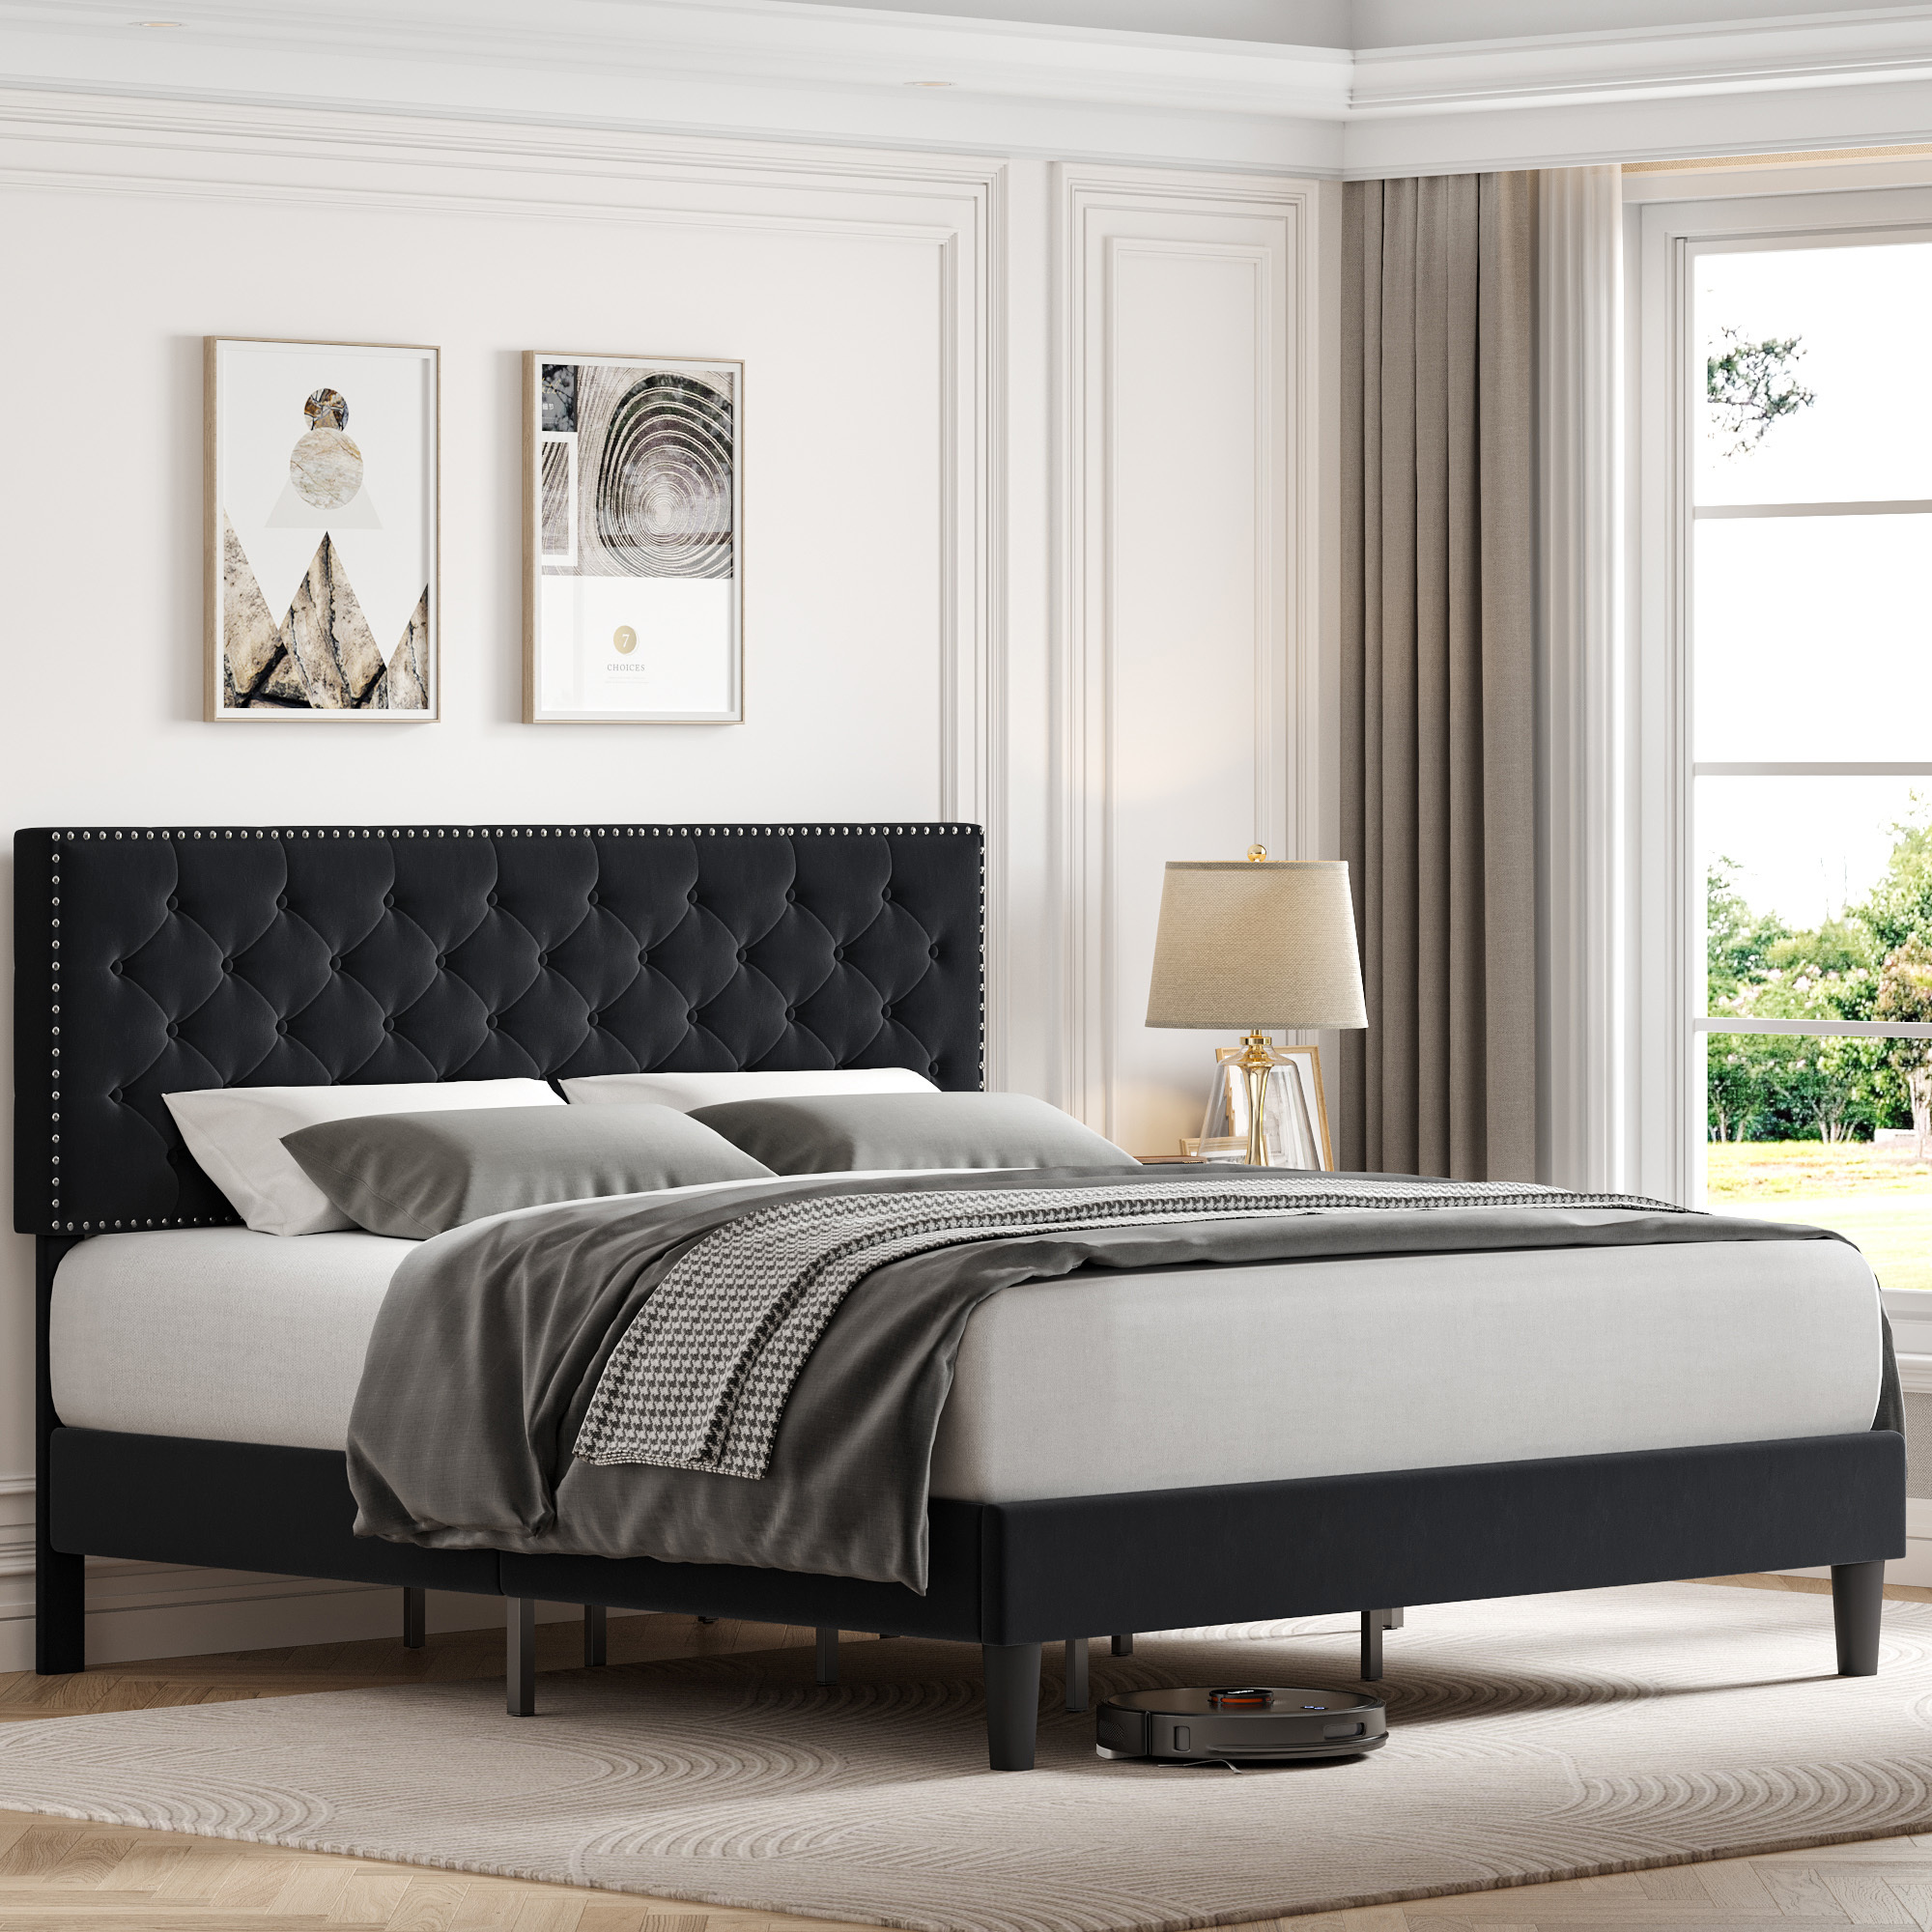 Homfa King Size Bed, Modern Upholstered Platform Bed Frame with Adjustable Headboard for Bedroom, Black - image 3 of 7